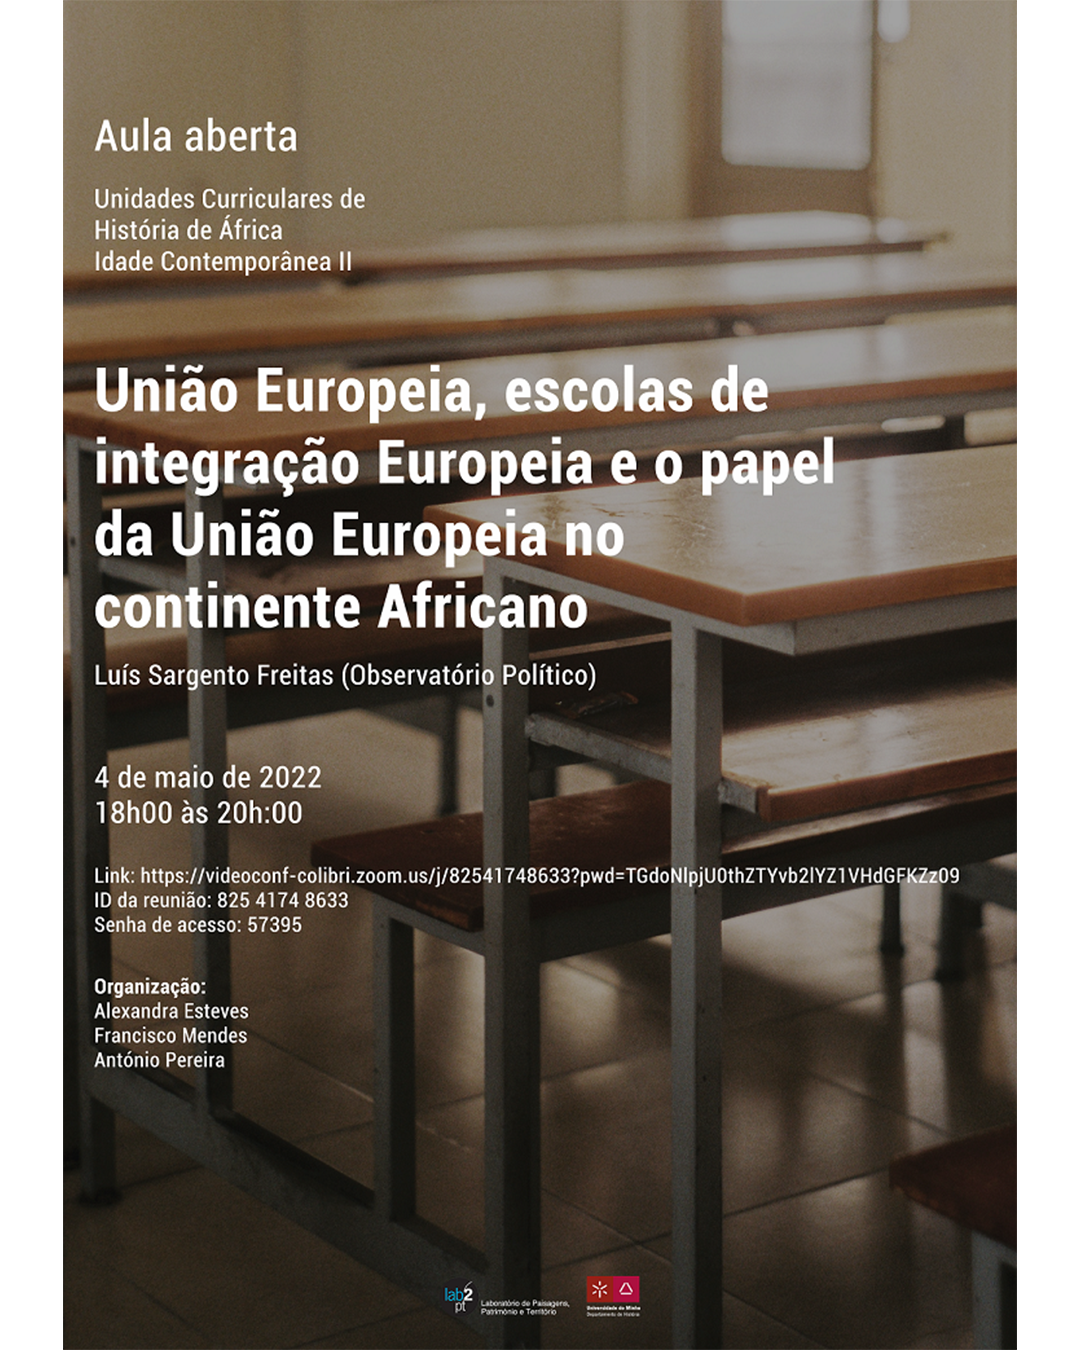 União Europeia, escolas de integração Europeia e o papel da União Europeia no continente Africano image